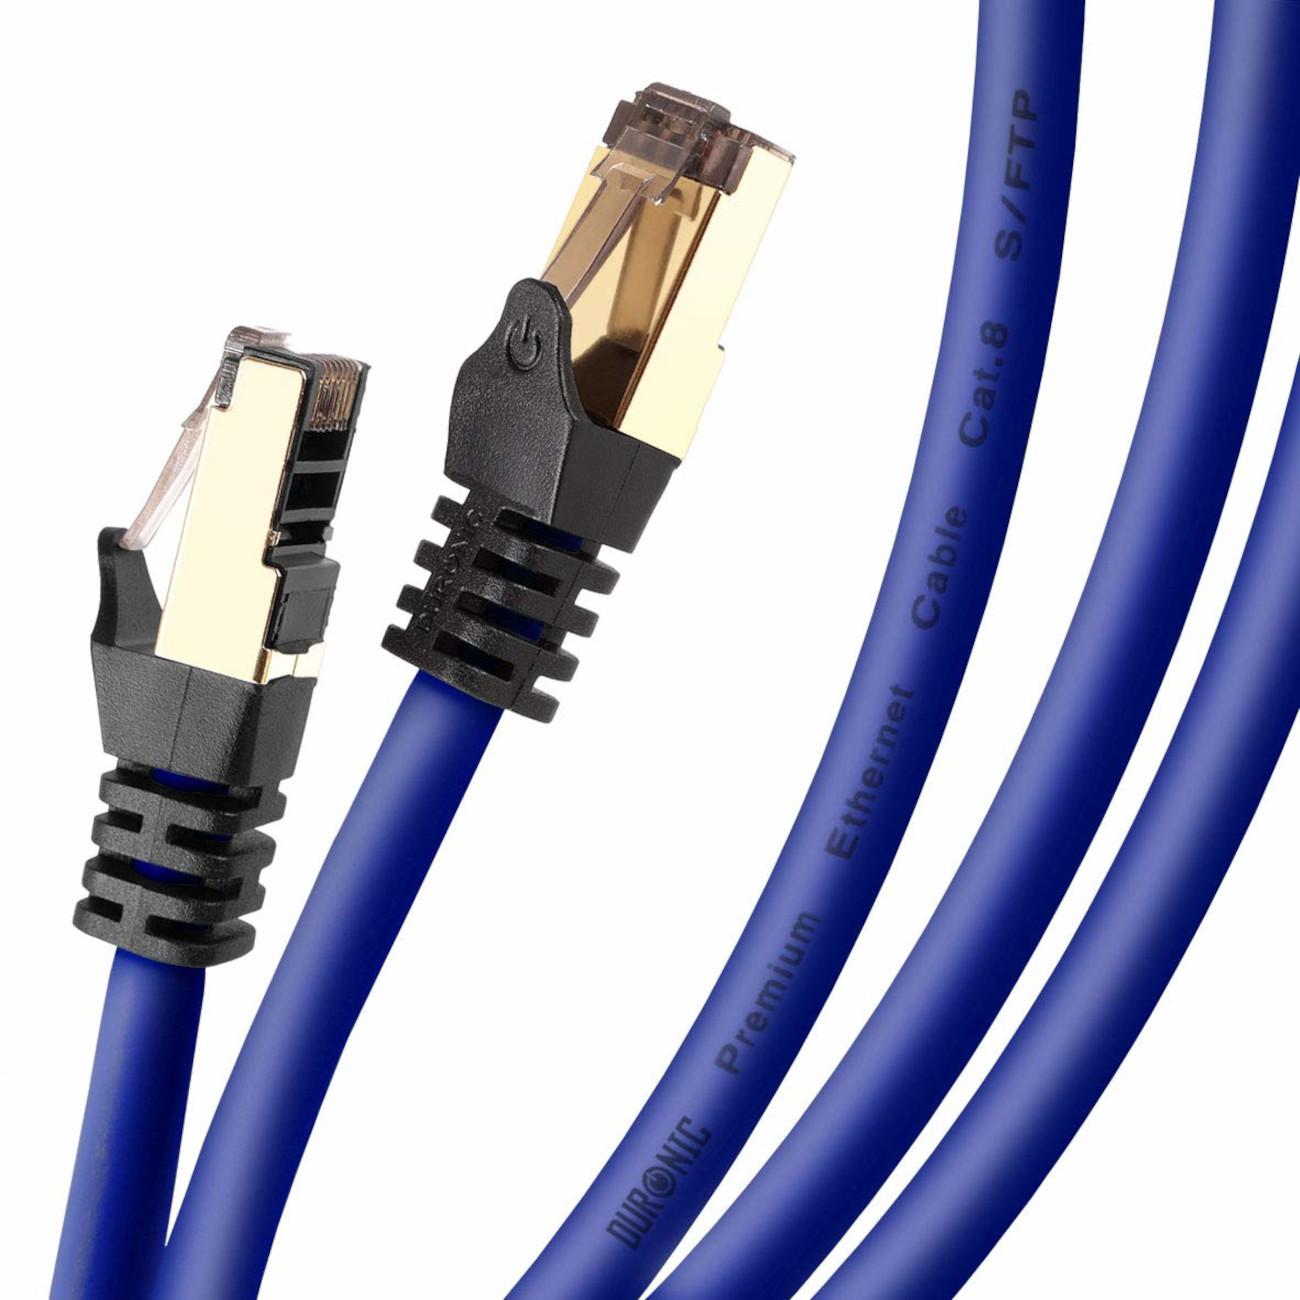 CAT8 MB/s m Lankabel Ethernetkabel | 3 Patchkabel | Konsole, RJ45 DURONIC Router 3m und Netzwerkkabel, BE für | 5.000